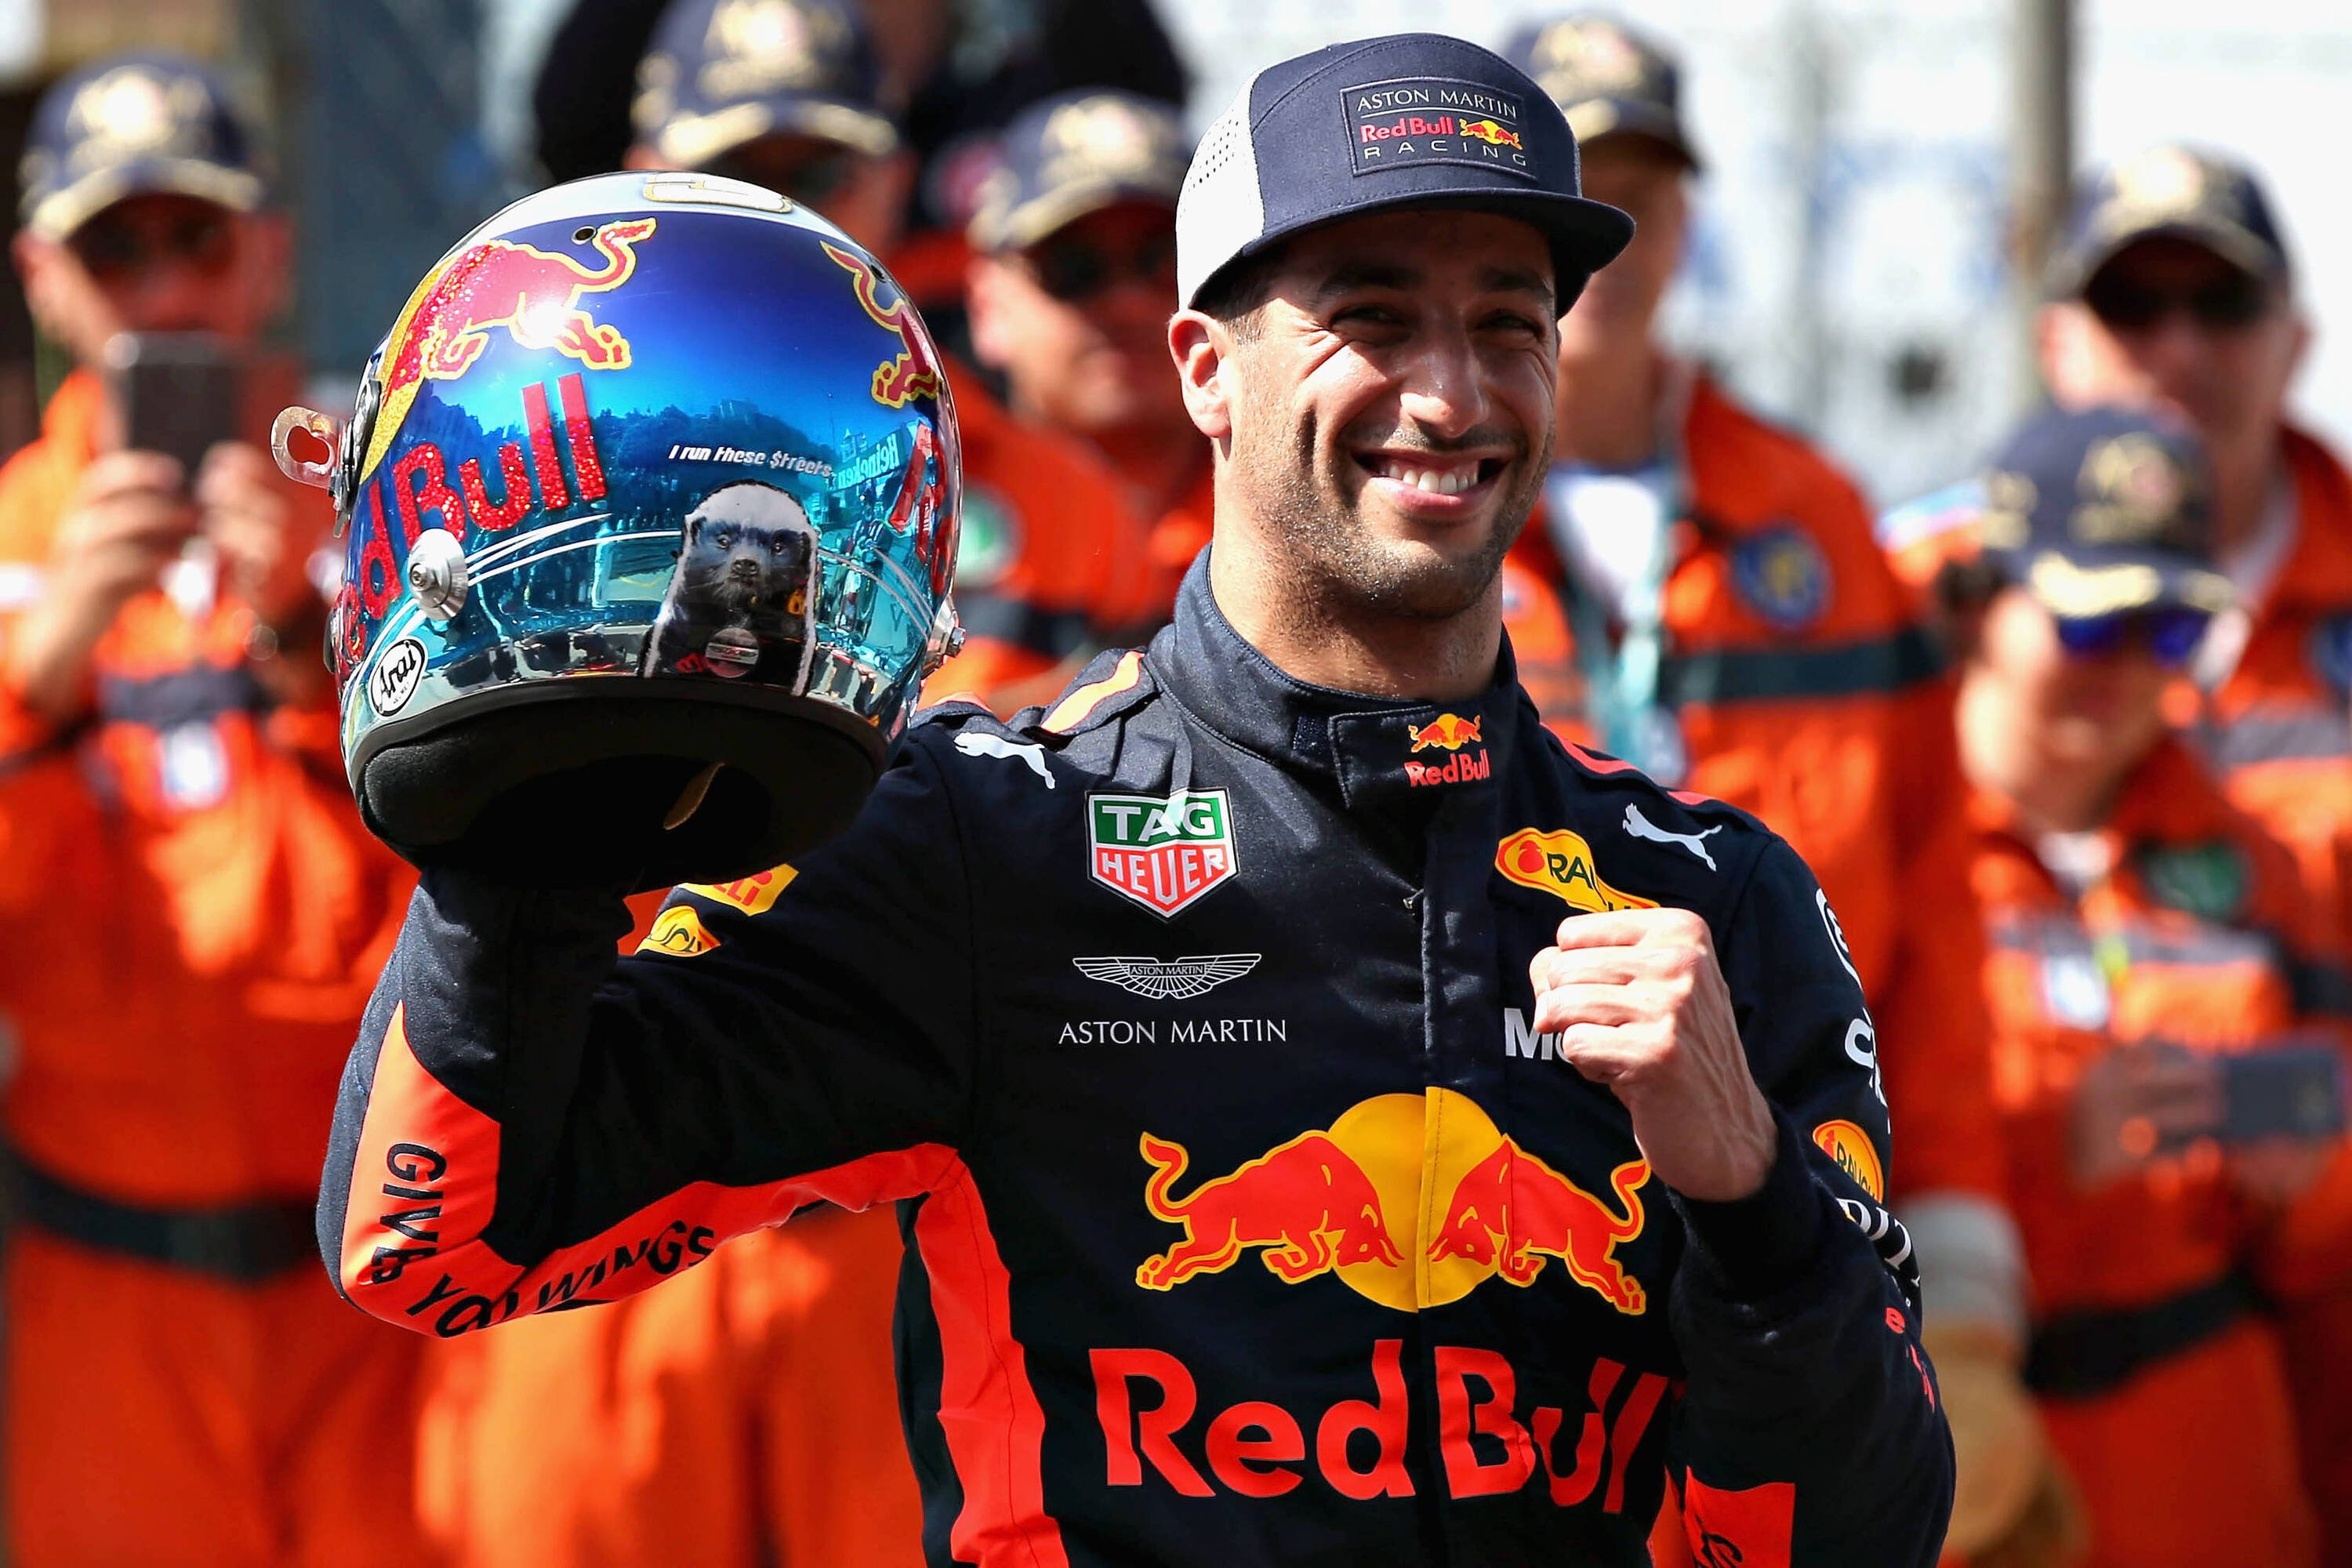 F1, GP Monaco 2018: Ricciardo, una pole per il futuro